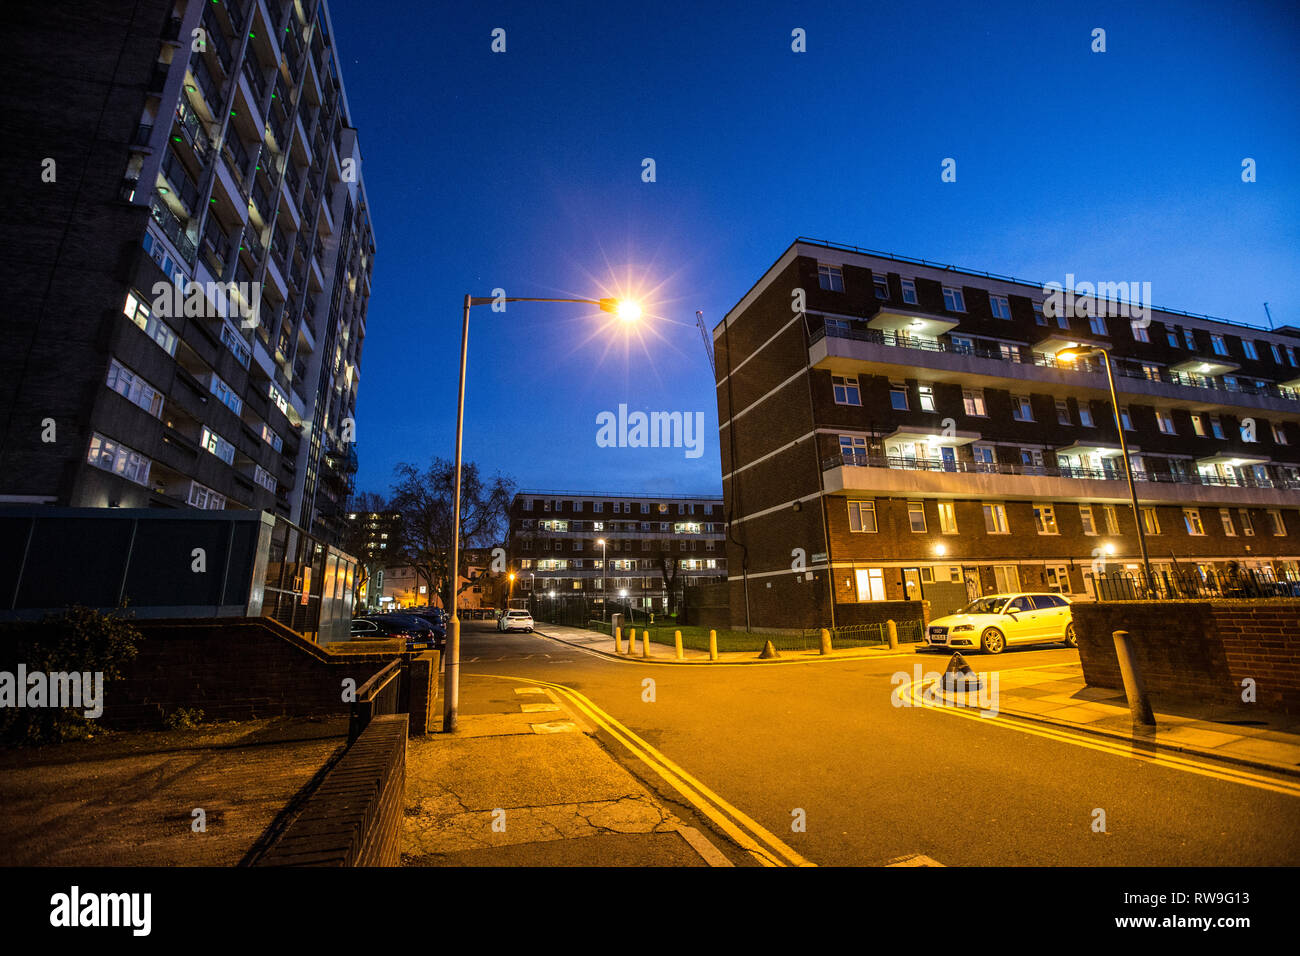 Blocs de logements sociaux, au crépuscule, les Fellows, Weymouth Cour Terrasse, Hoxton, East London, Angleterre, Royaume-Uni. Banque D'Images